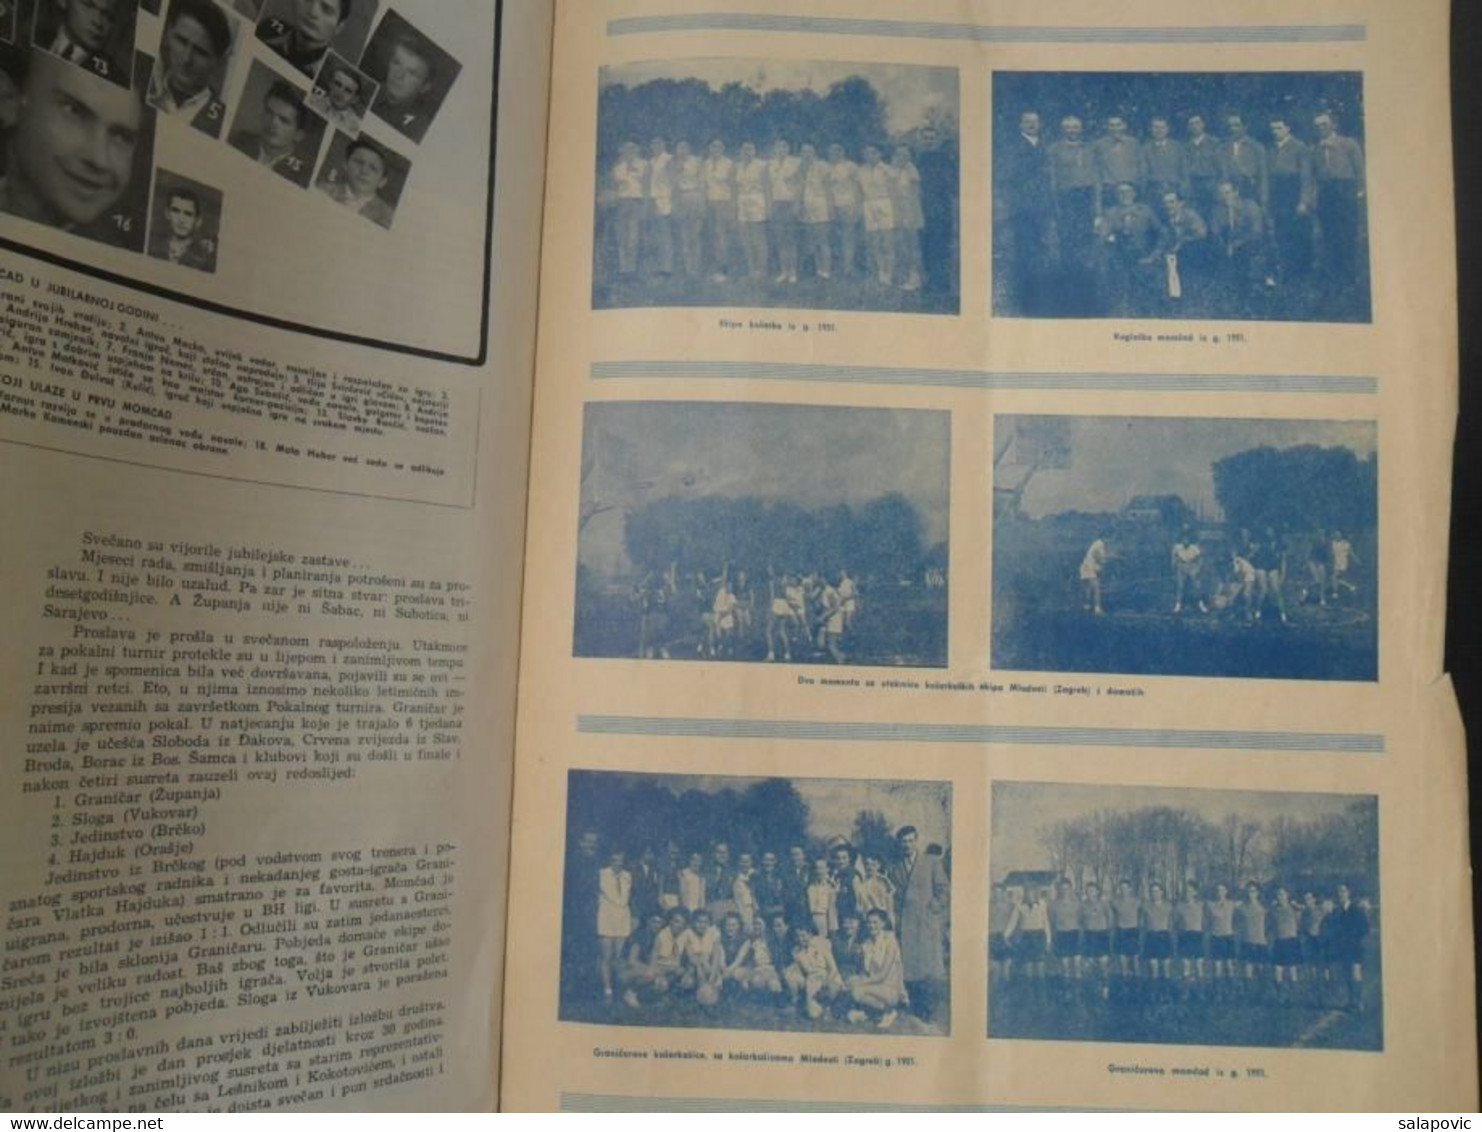 30 GODINA SPORTSKOG DRUSTVA GRANICAR ZUPANJA Monografija Football Club Croatia, Monograph - Books